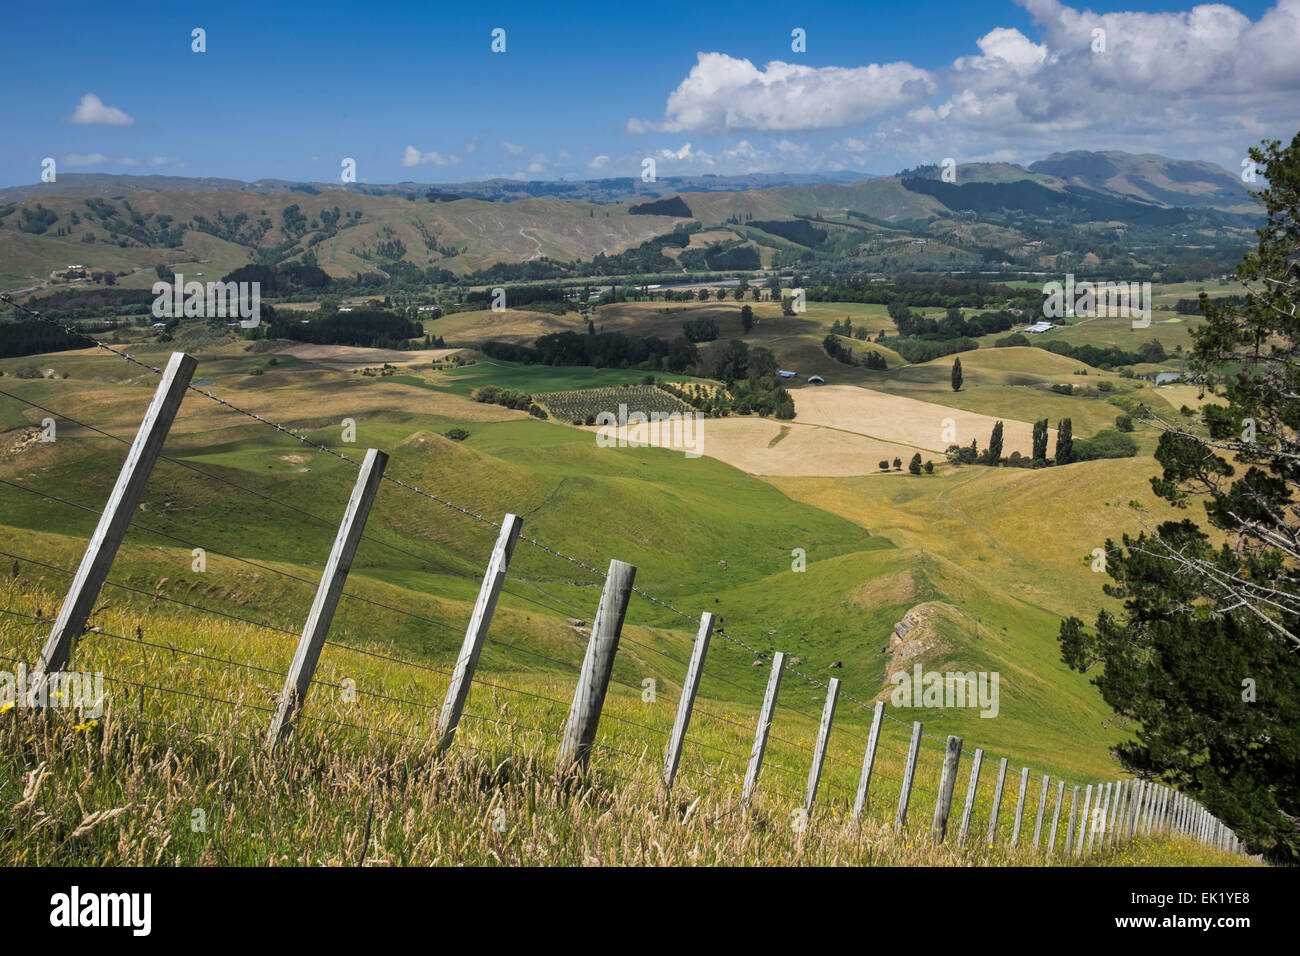 Stacheldraht Zaun Trennung Ackerland Weiden vom öffentlichen Zugang zu Te Mata, Neuseeland. Schwarz / weiß-Version EK1YE8 Stockfoto